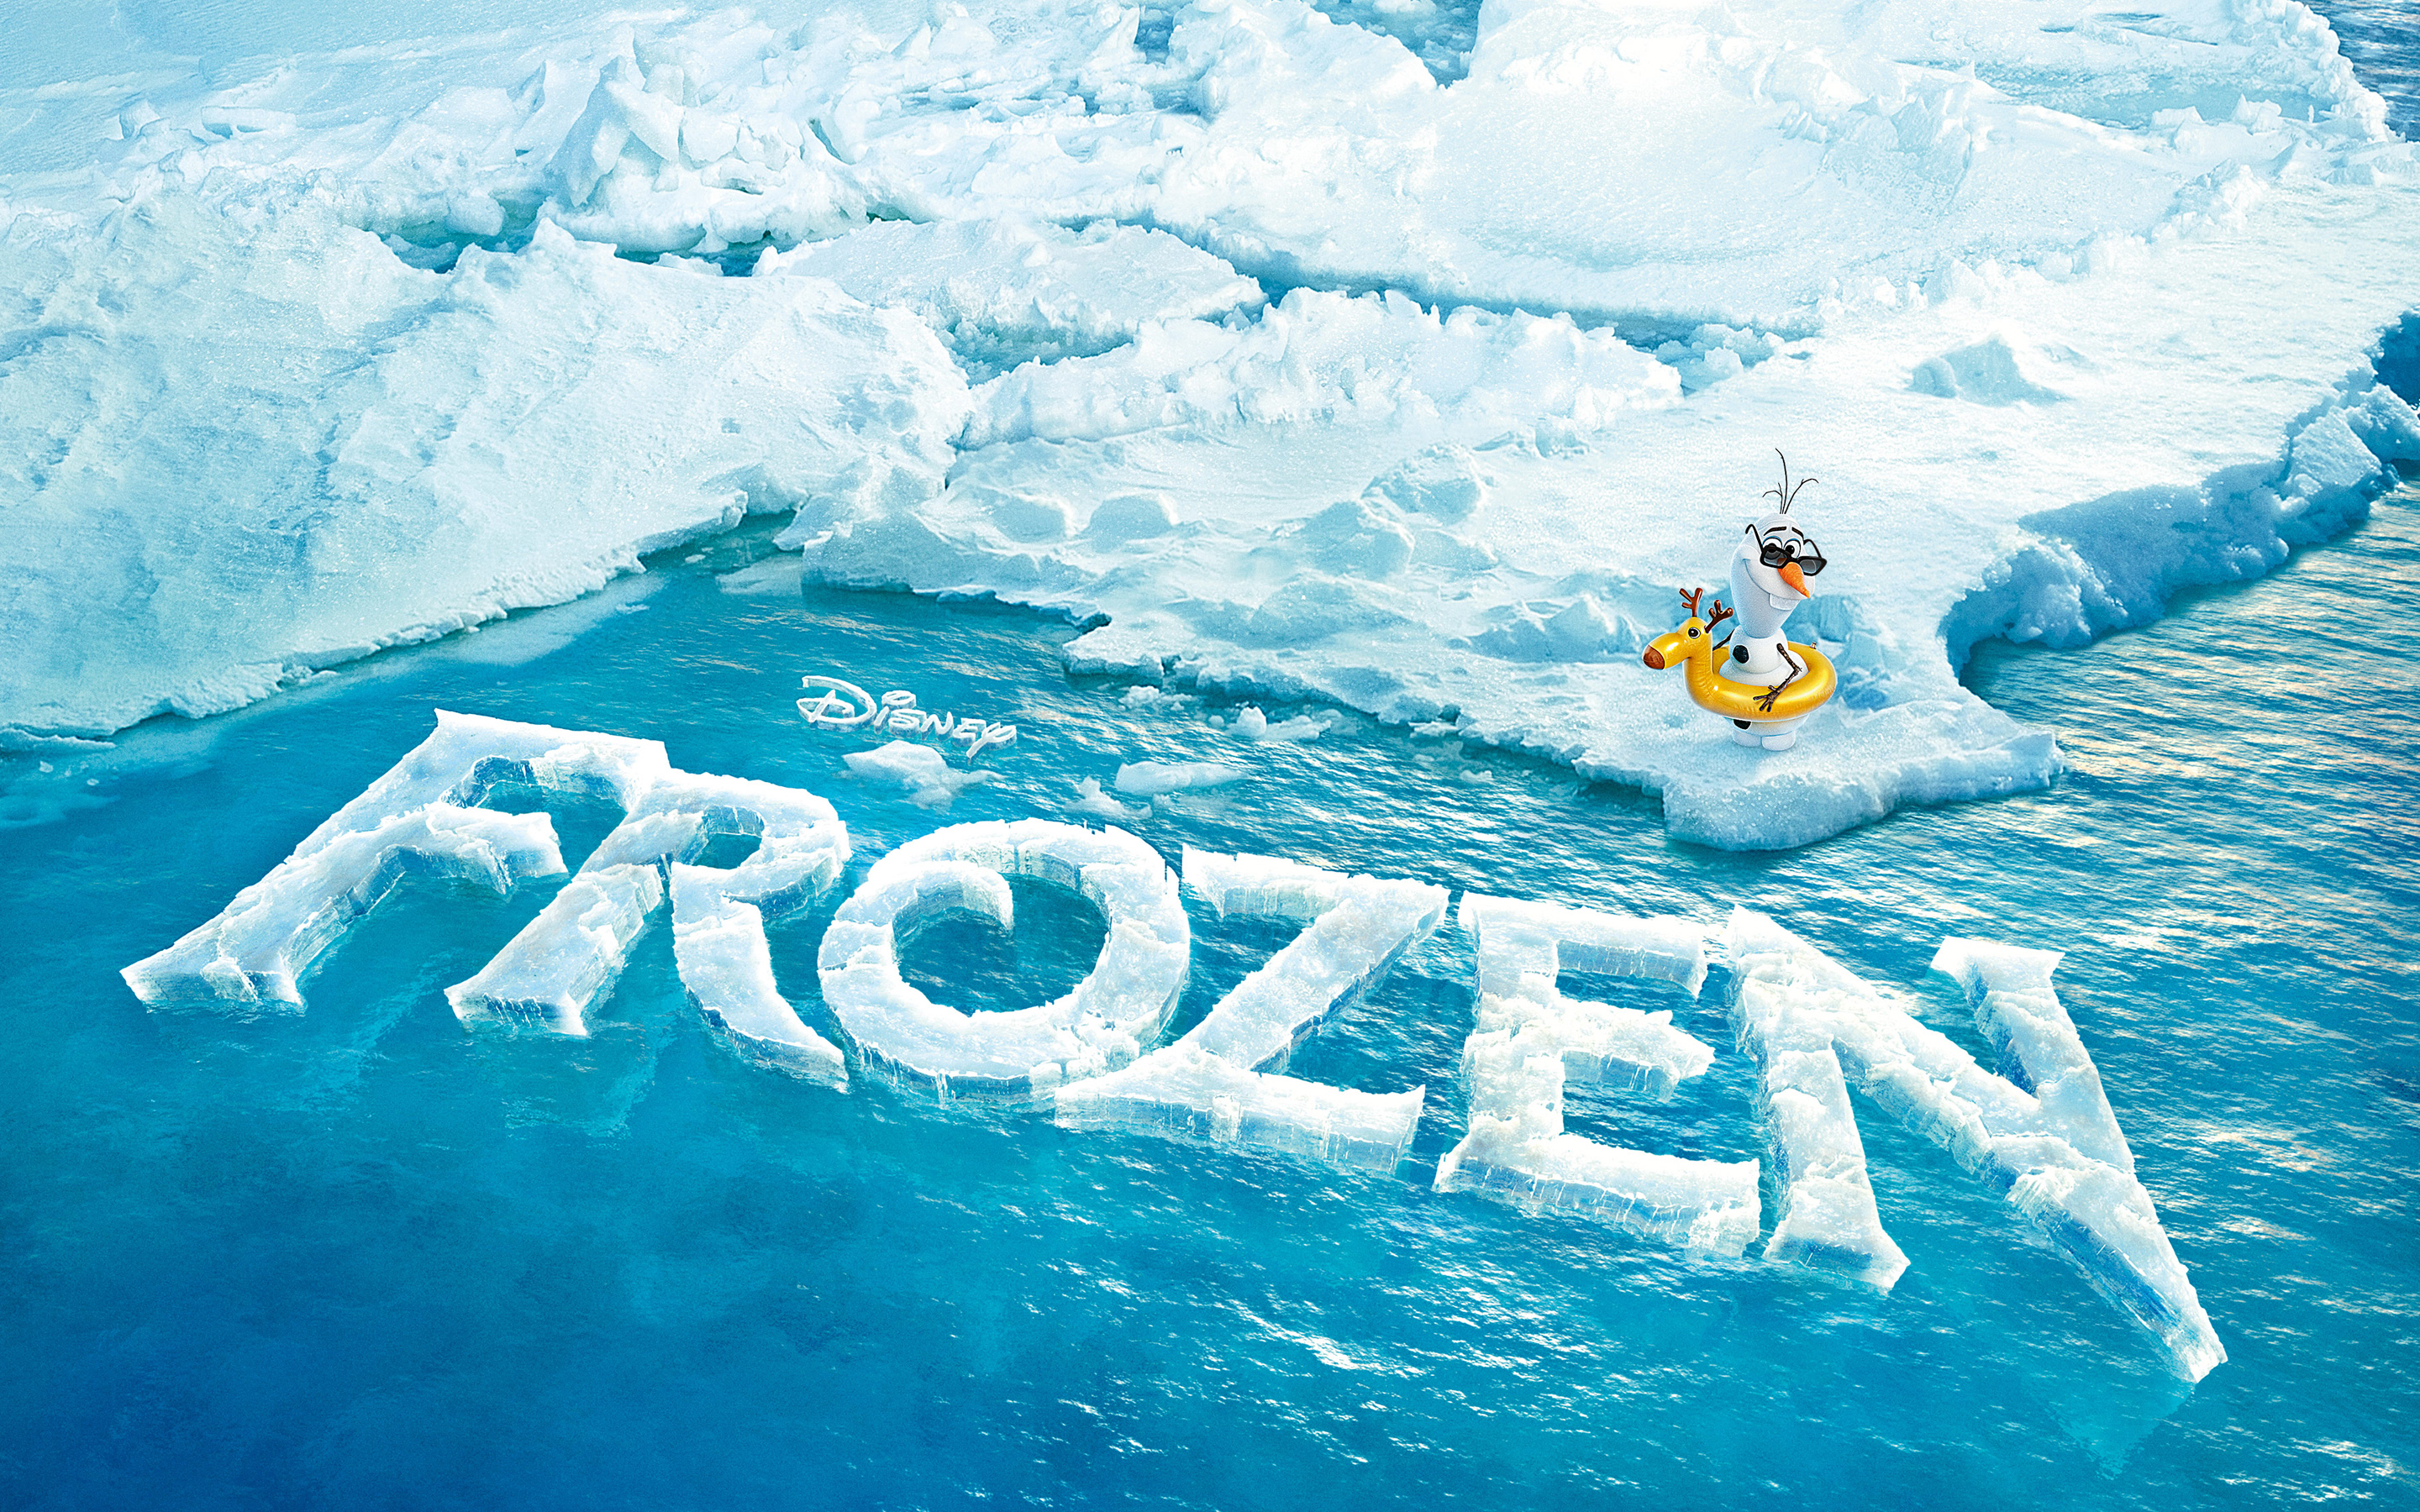 Frozen Movie